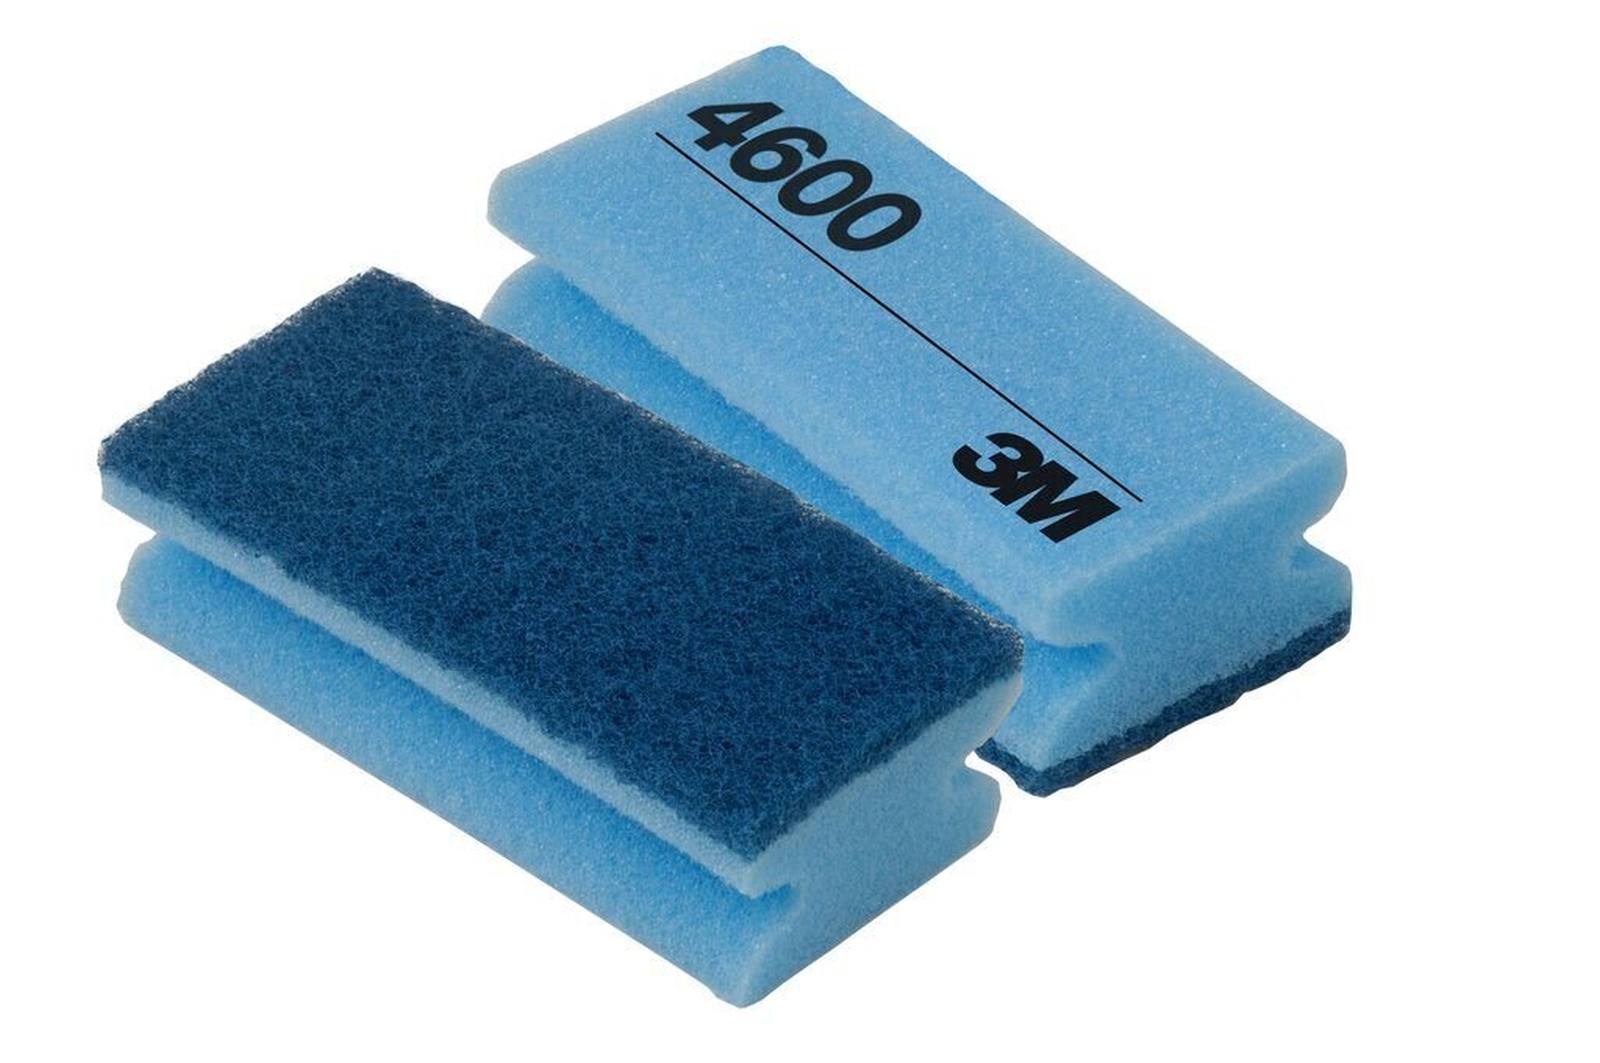 3M Scotch-Brite Reinigingsspons 4600 blauw/blauw 70 mm x 150 mm